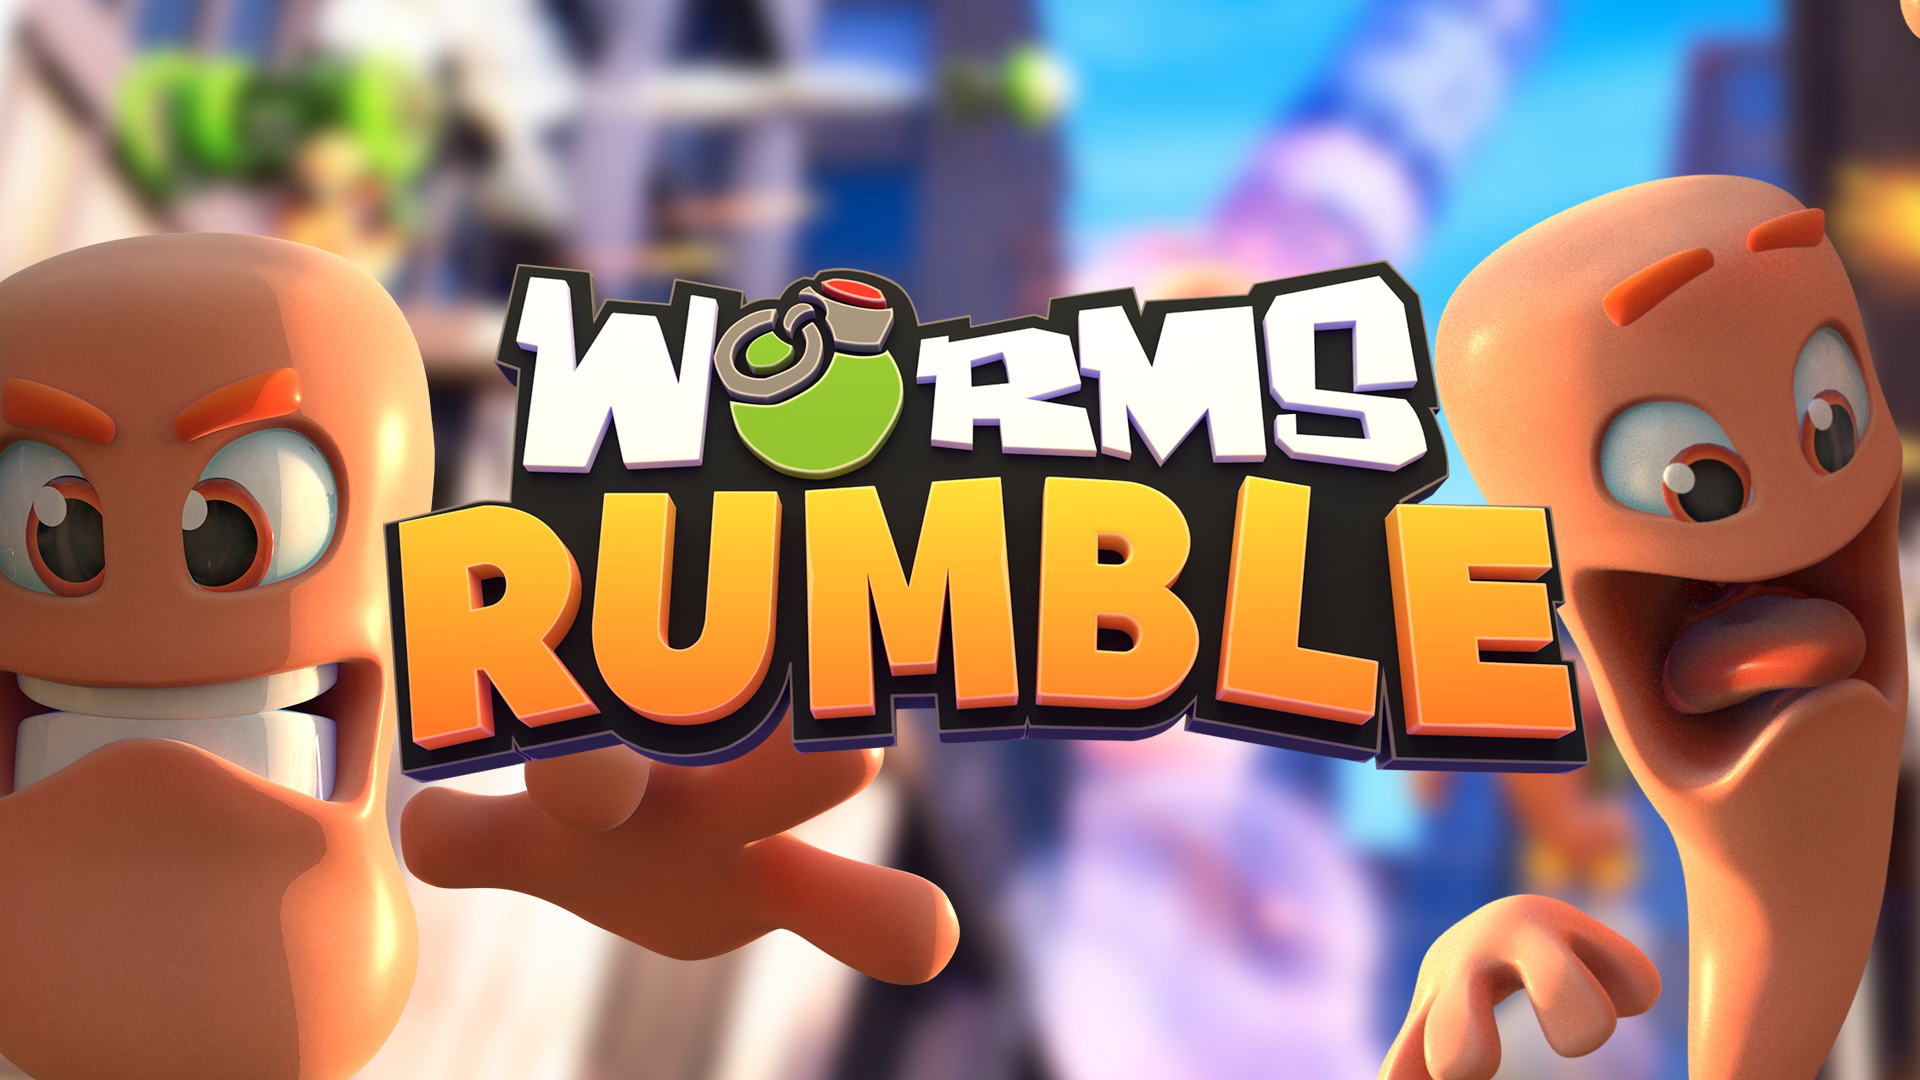 Worms Rumble Faq Team17 Group Plc